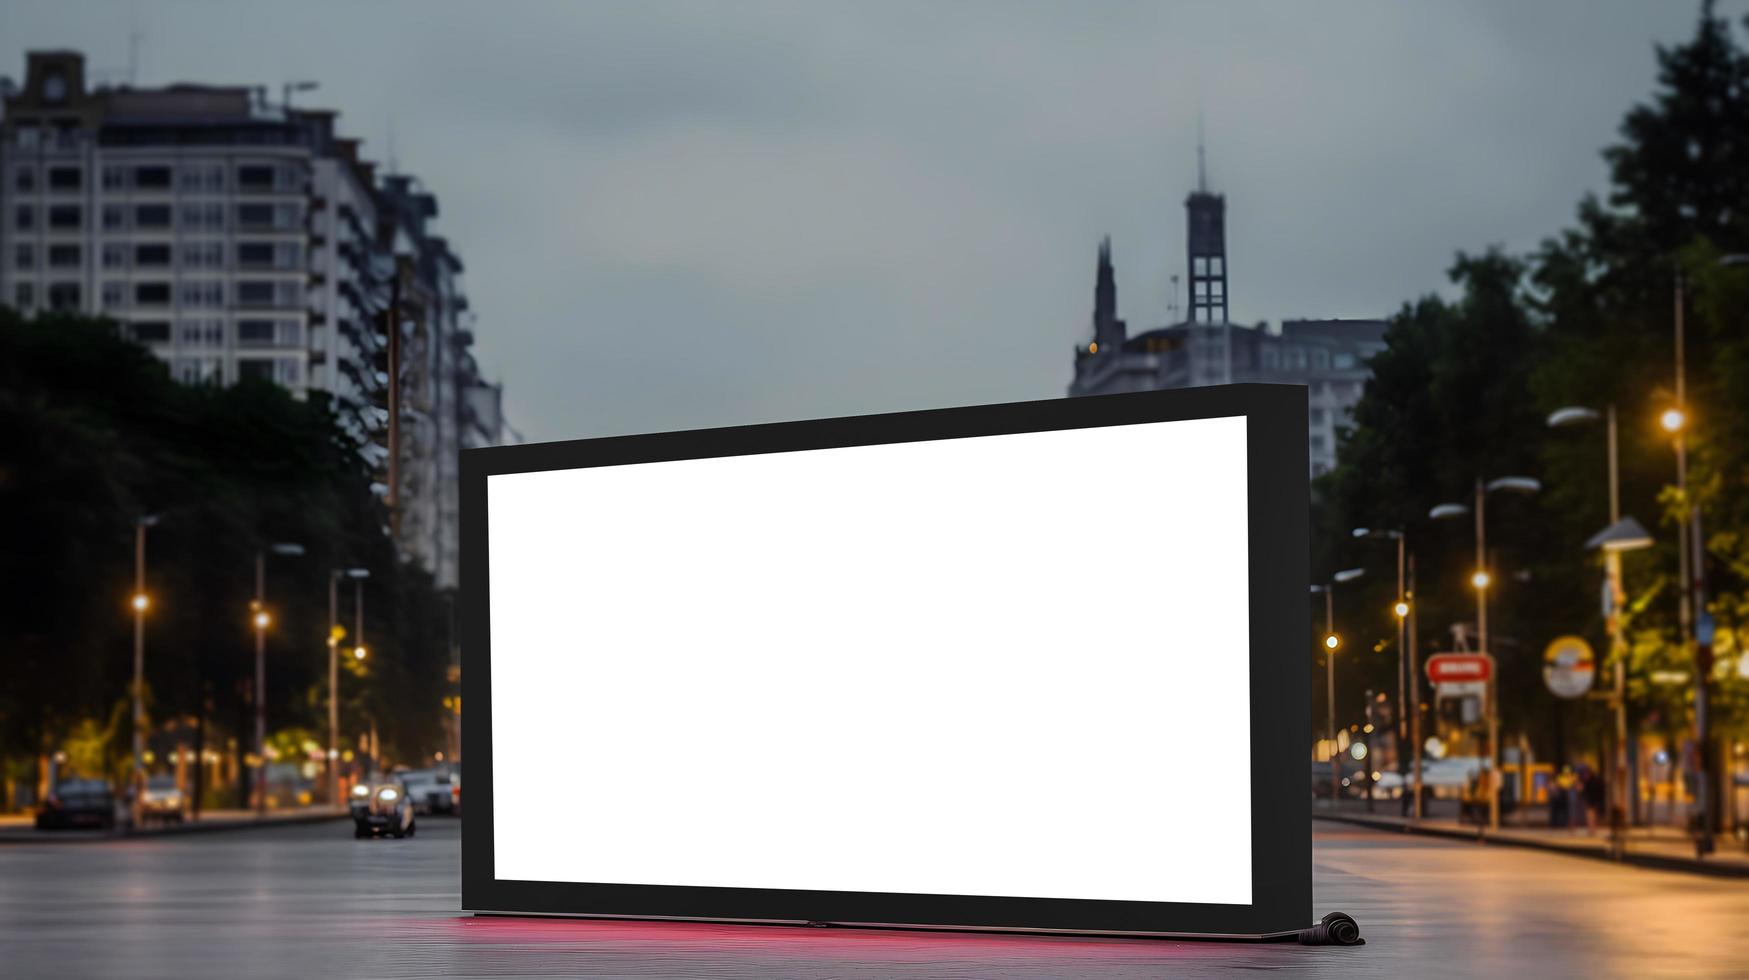 blanco al aire libre evento Anuncio pantalla para márketing objetivo, vacío LED pantalla para evento Anuncio, blanco LED pantalla Bosquejo foto